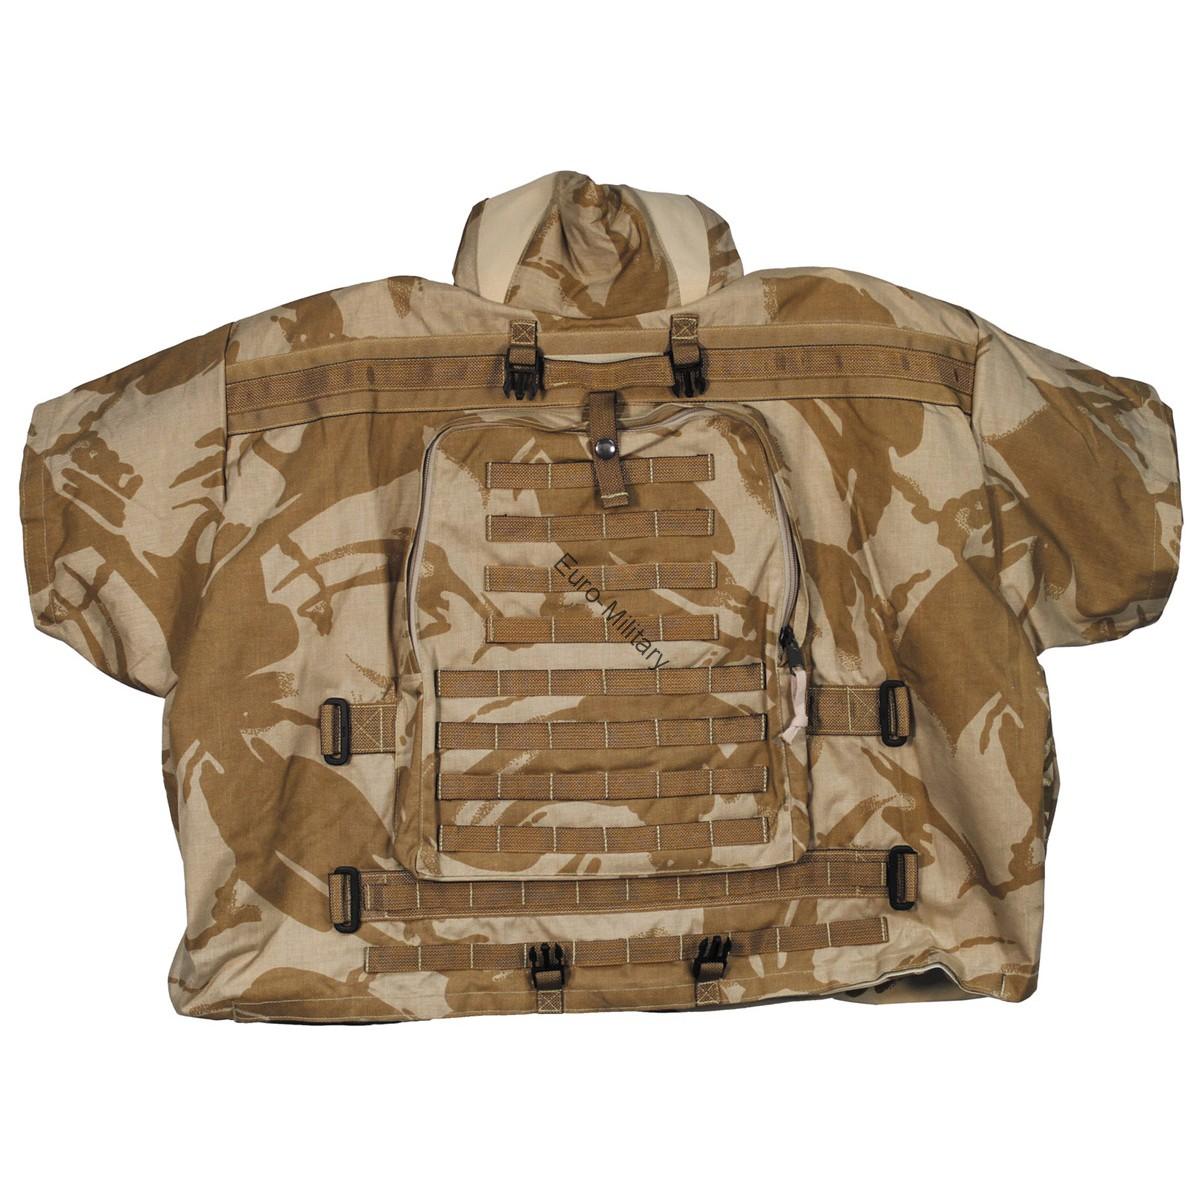 Original British Army DPM Desert Camo KESTREL Body Armour Vest - Factory New